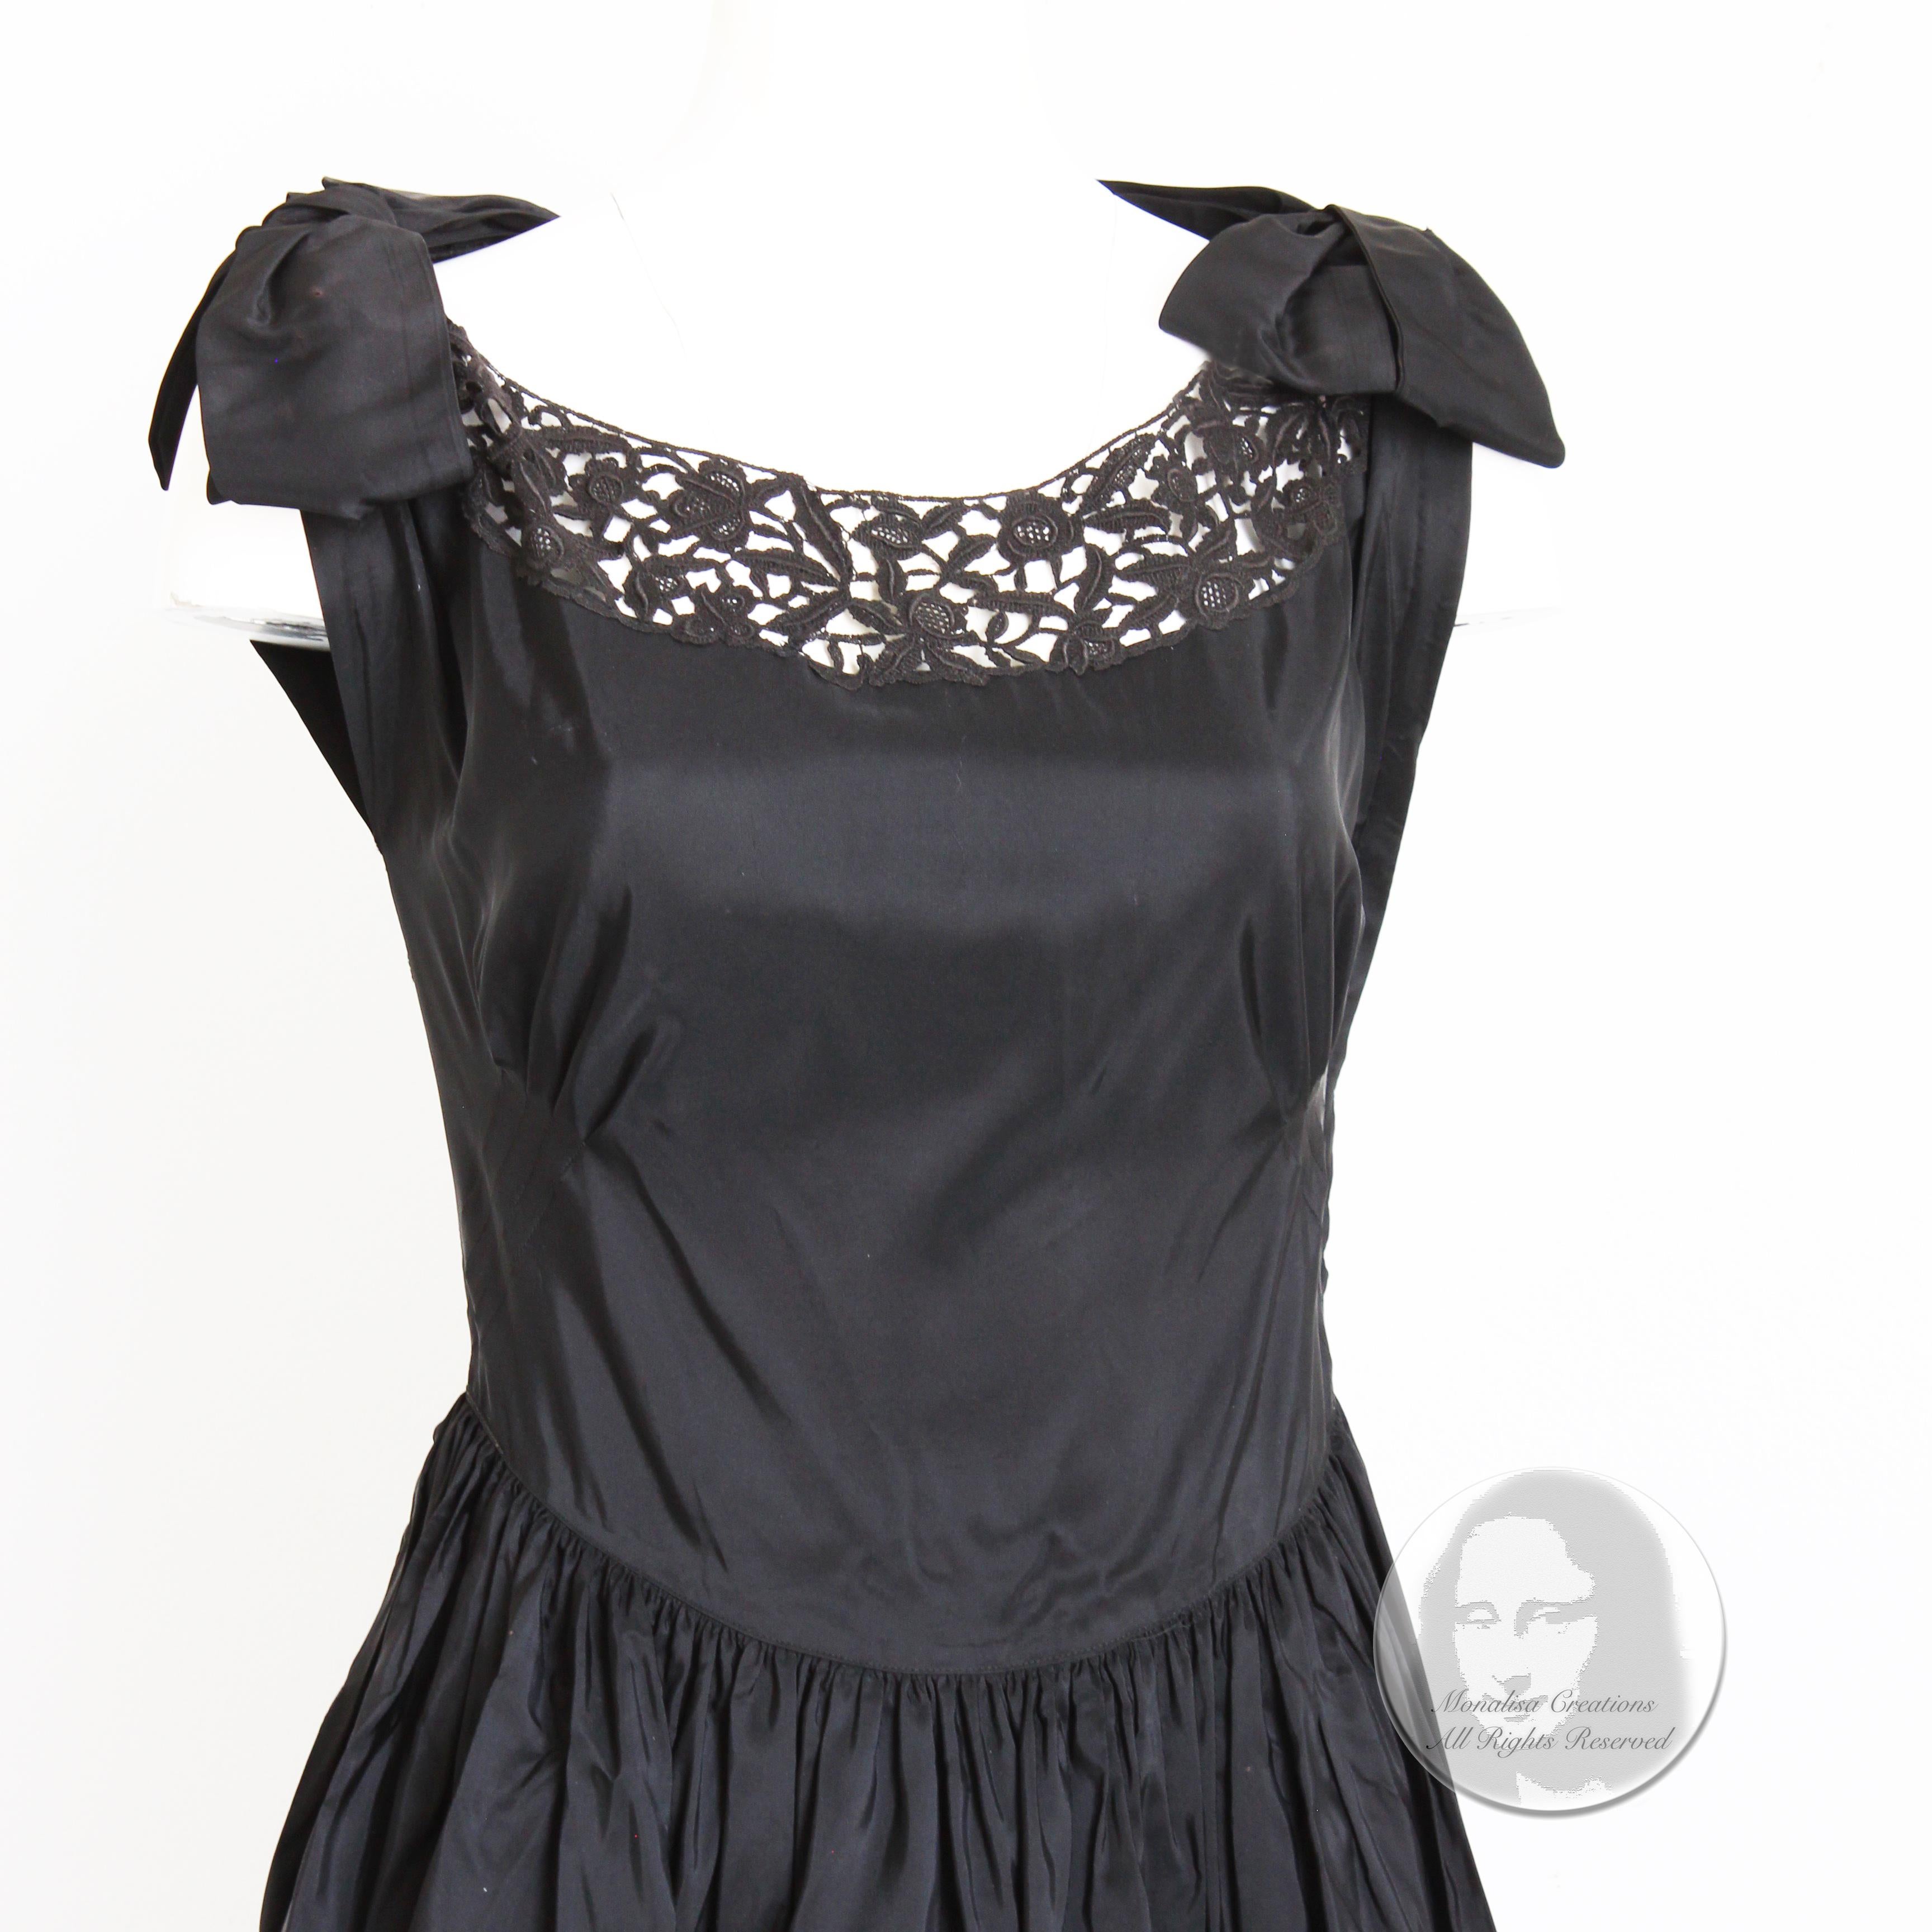 Fabelhaftes Vintage-Abendkleid, wahrscheinlich aus den späten 40er oder frühen 50er Jahren. Es ist aus schwarzem Taft gefertigt und hat einen Saum aus schwarzer Spitze mit Spitzeneinsätzen im Brust- und Rückenbereich - sehr schick! Die Abnäher am